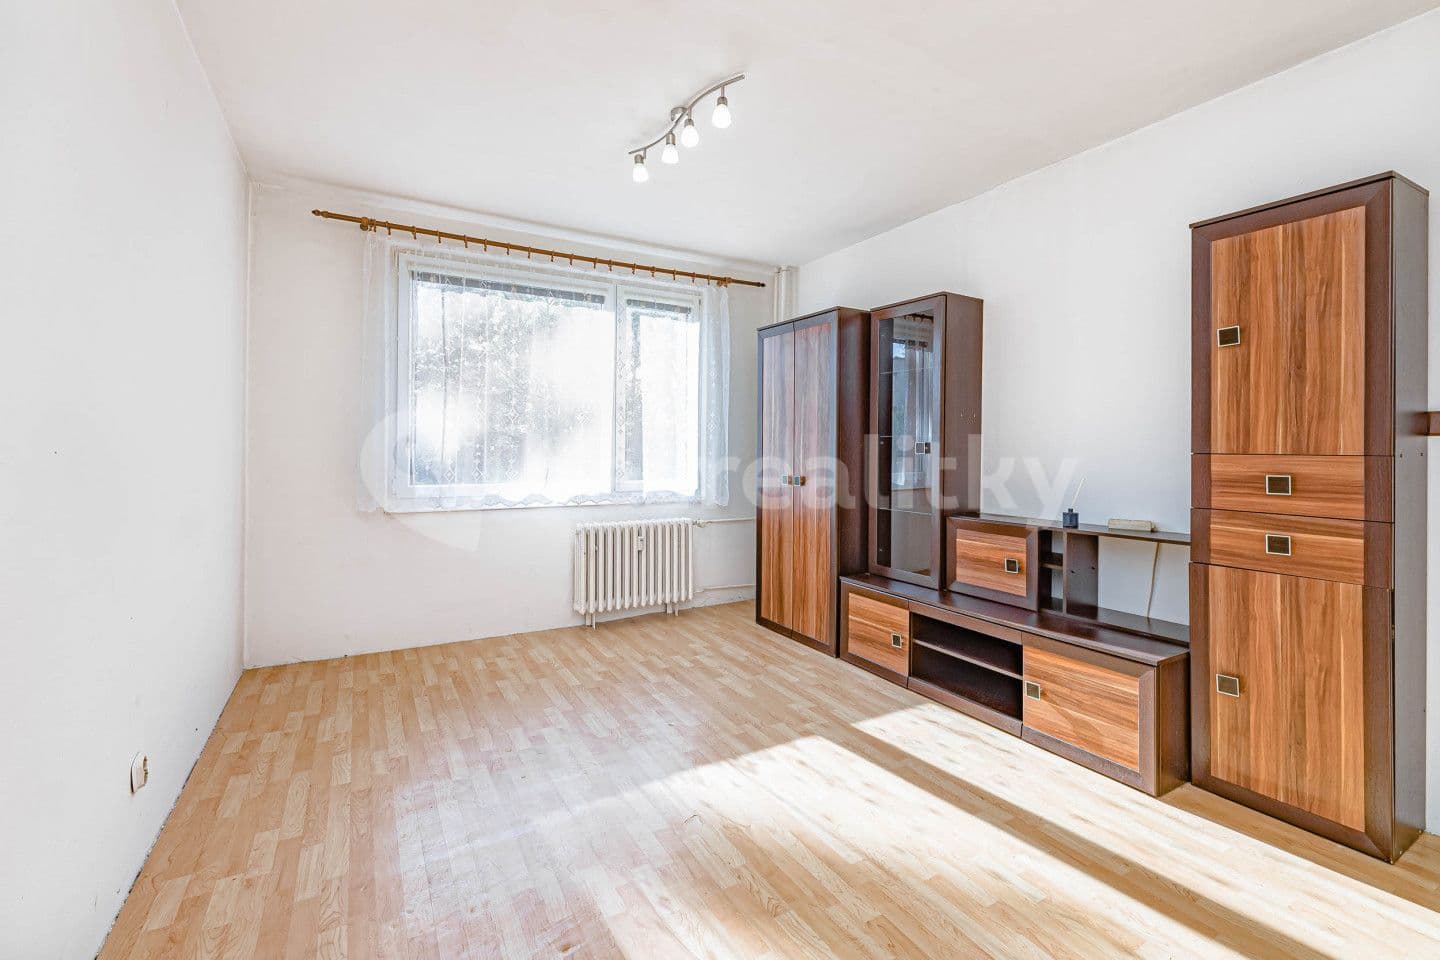 2 bedroom with open-plan kitchen flat for sale, 52 m², Struha, Vamberk, Královéhradecký Region